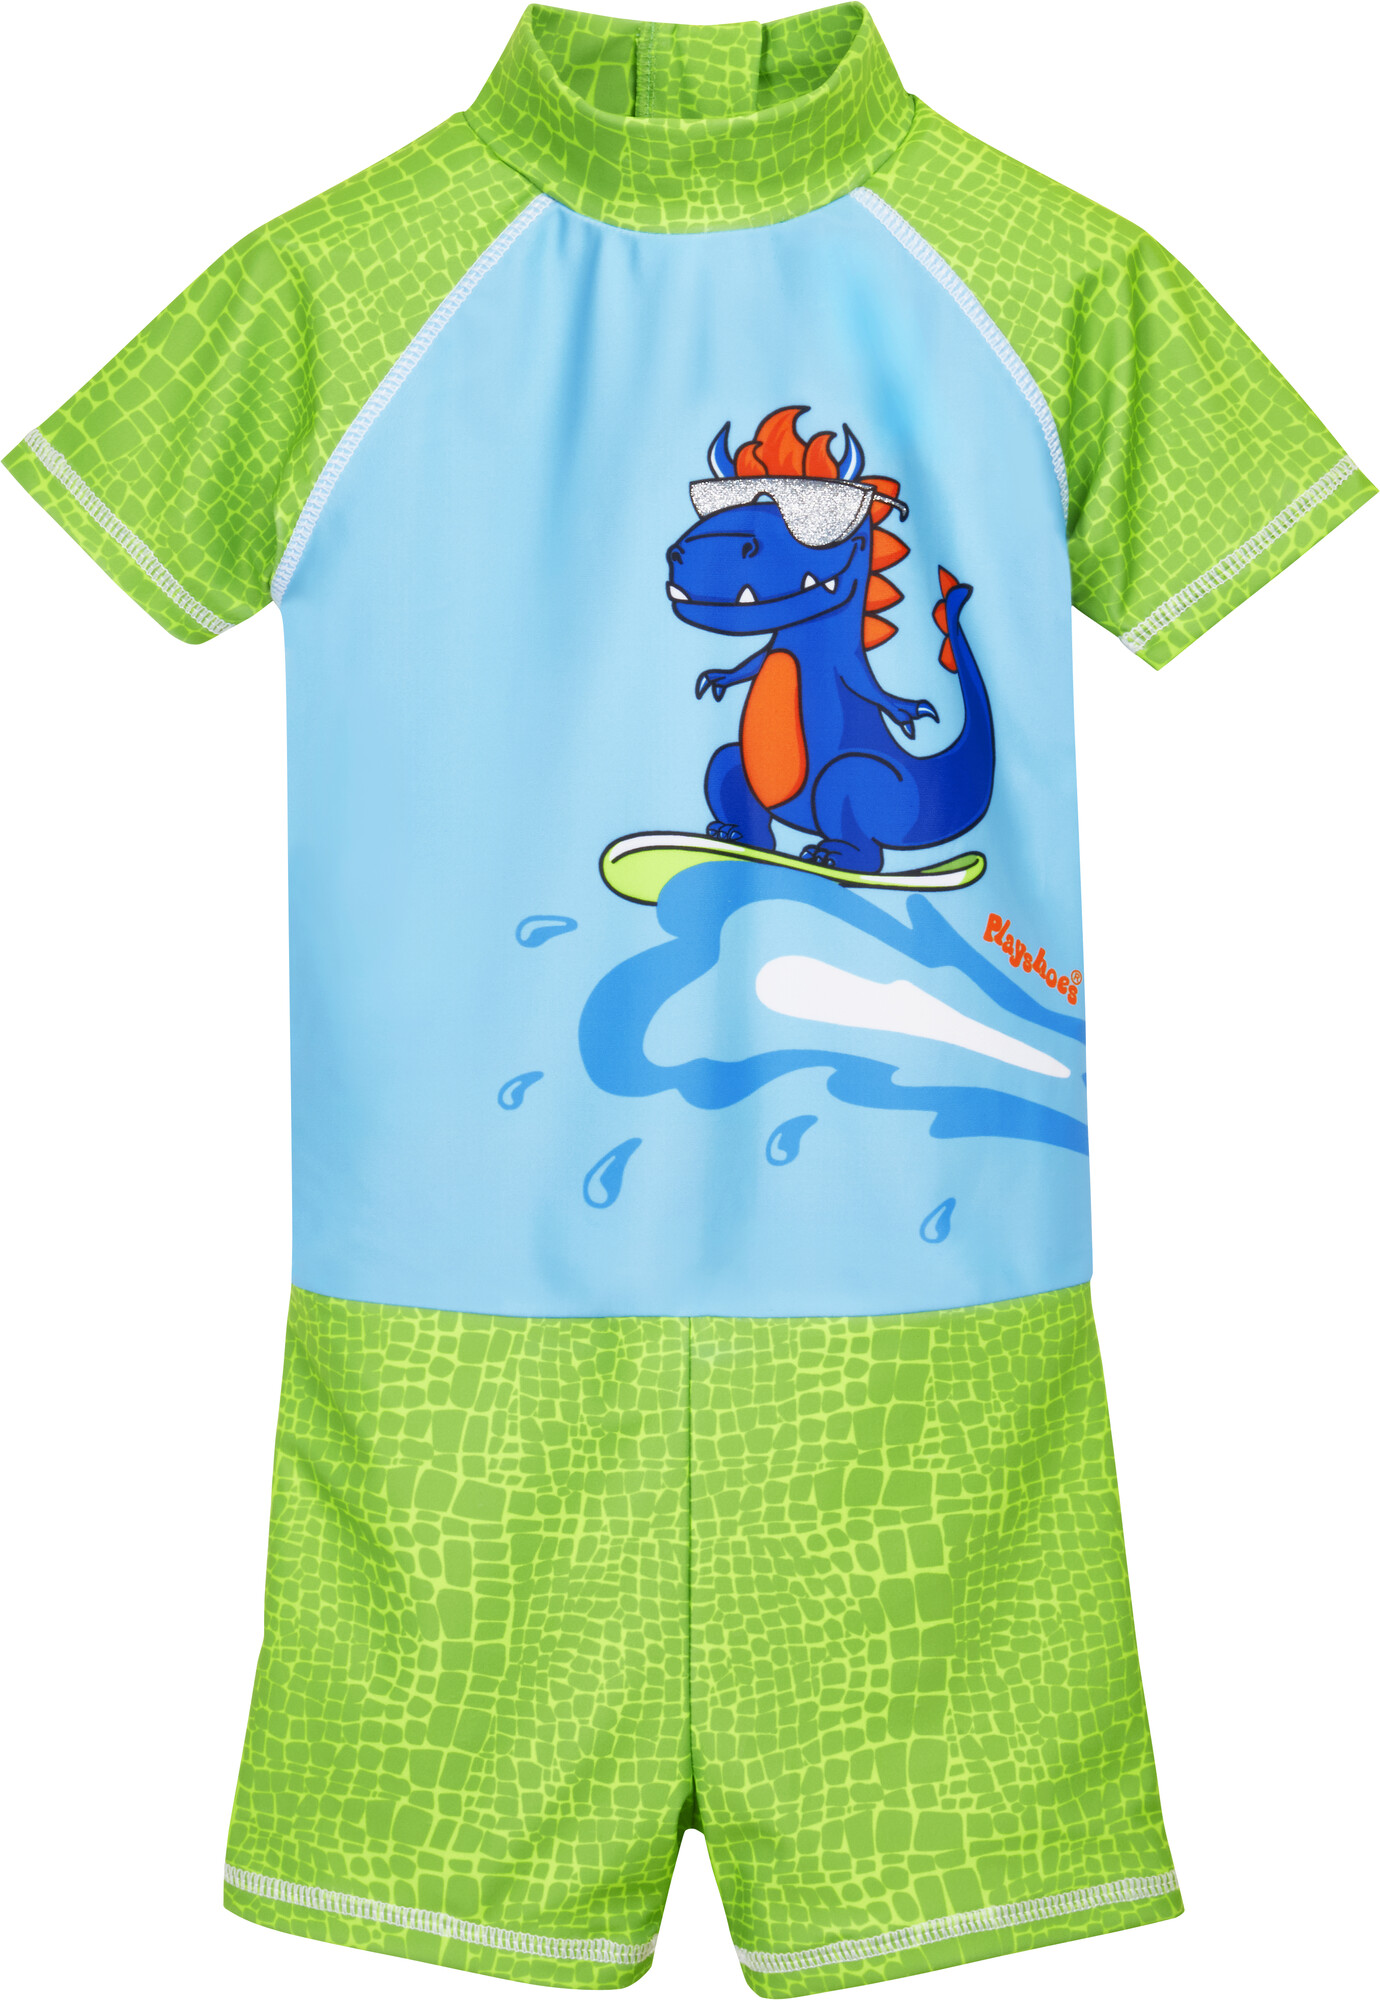 Playshoes - UV swimsuit for boys - Dino - Lightblue/Green